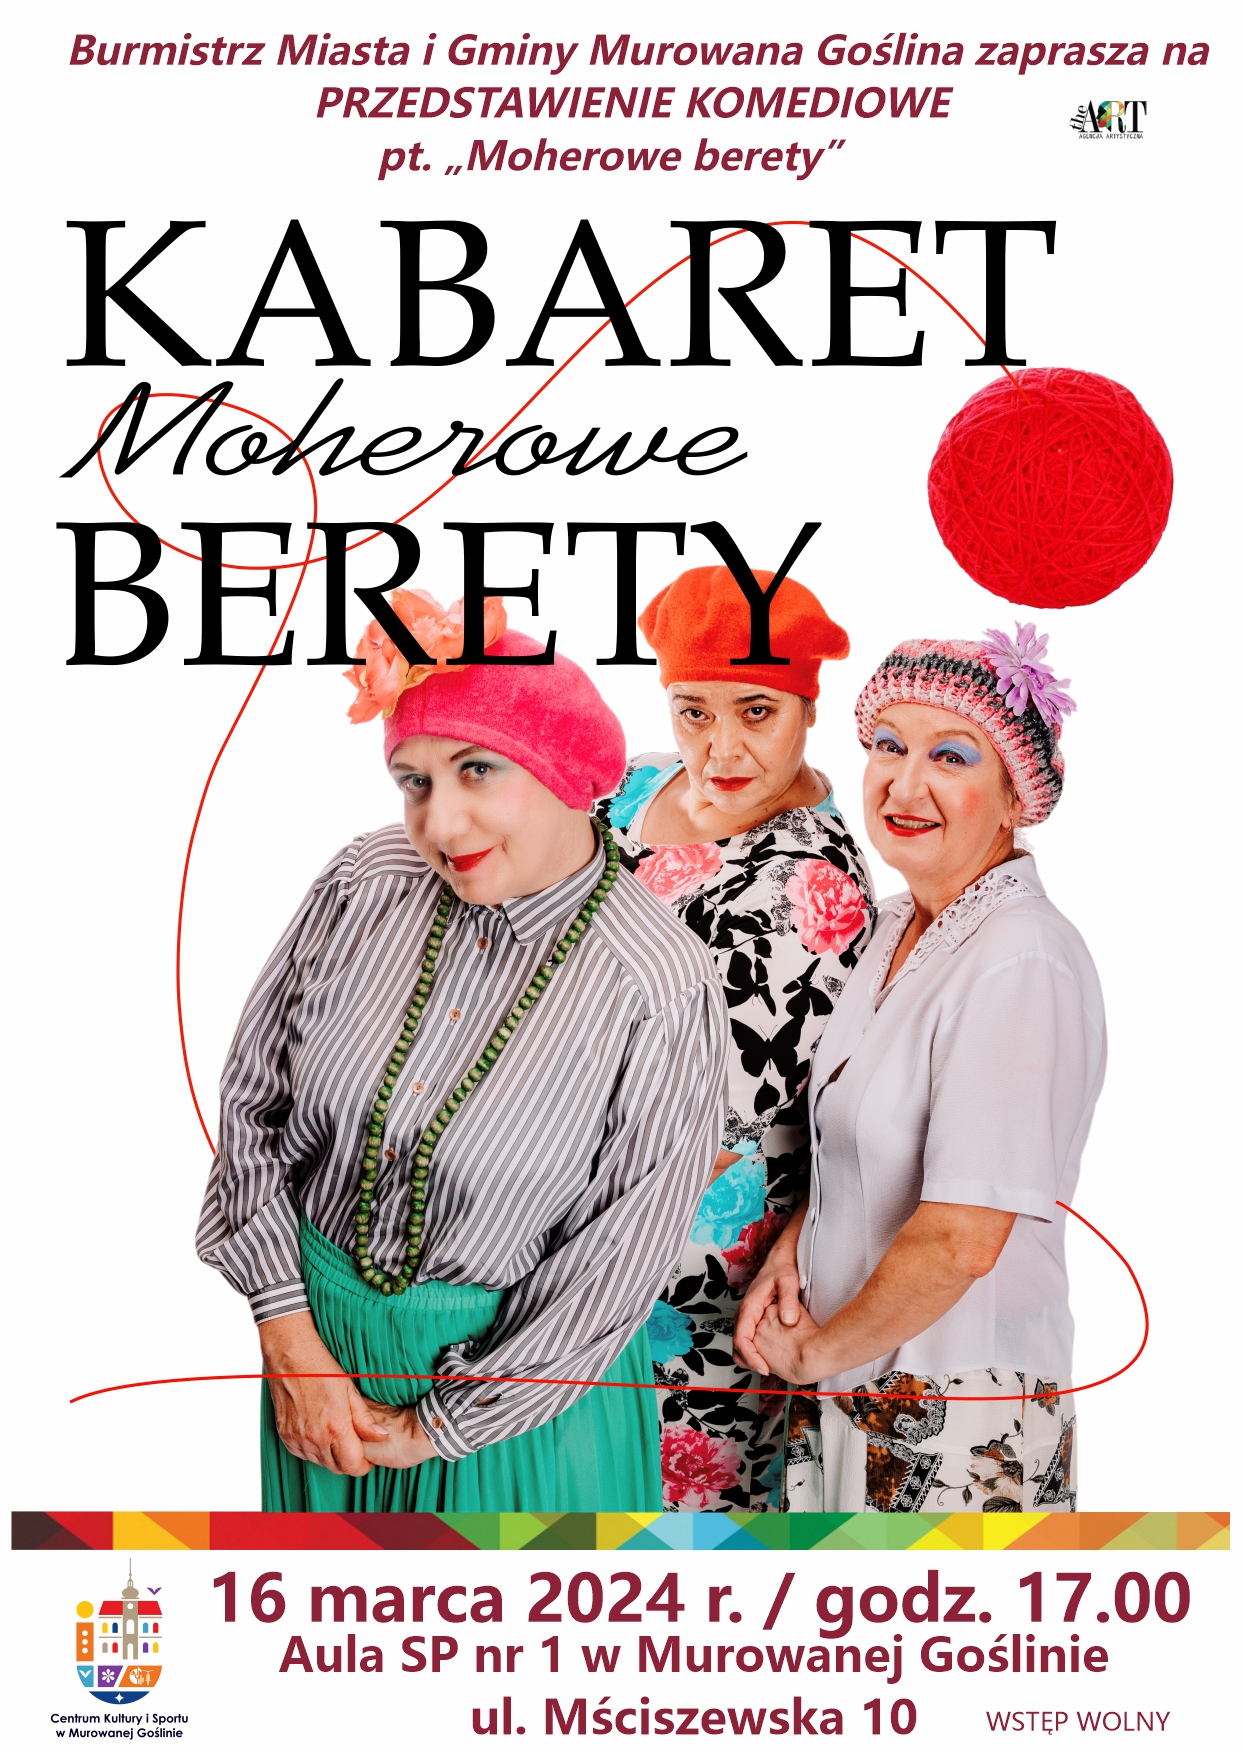 Kabaret Moherowe berety, 16 marca, godz. 17.00, aula SP1, na zdjeciu trzy przebranie kobiety, mocno umalowane, każda w berecie